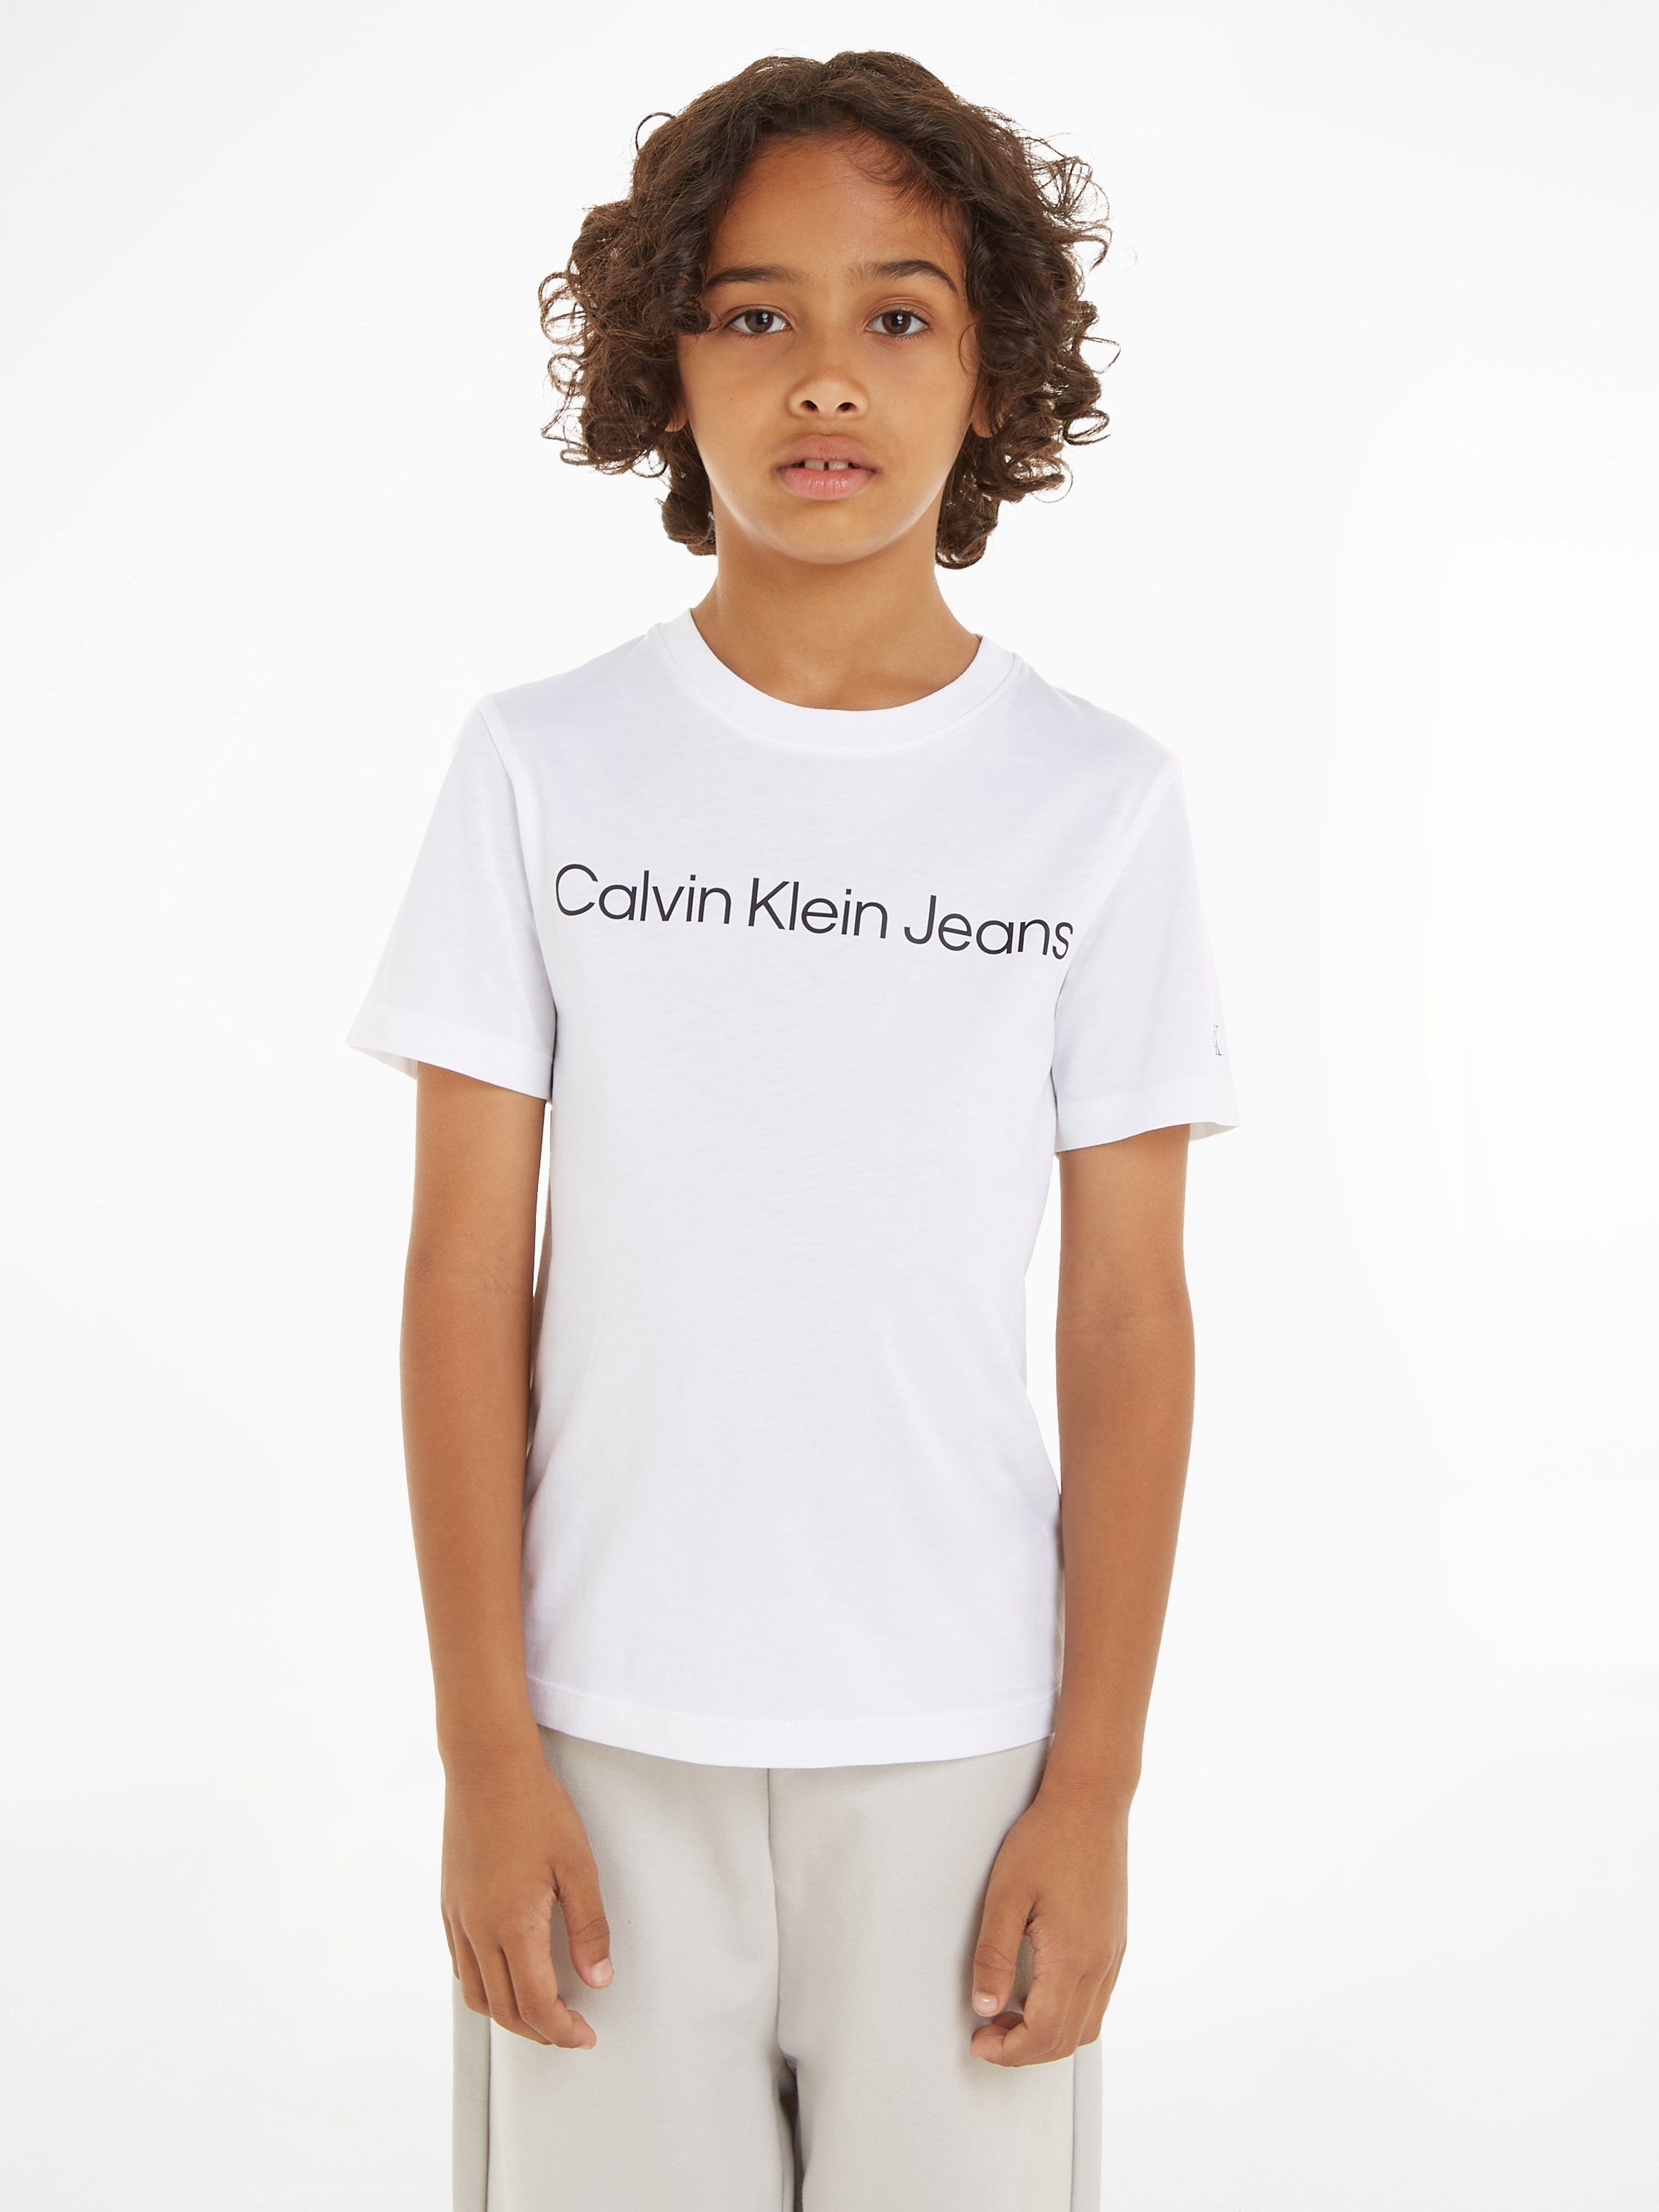 INST. SS mit Bright Calvin Klein LOGO Logoschriftzug Sweatshirt T-SHIRT White Jeans